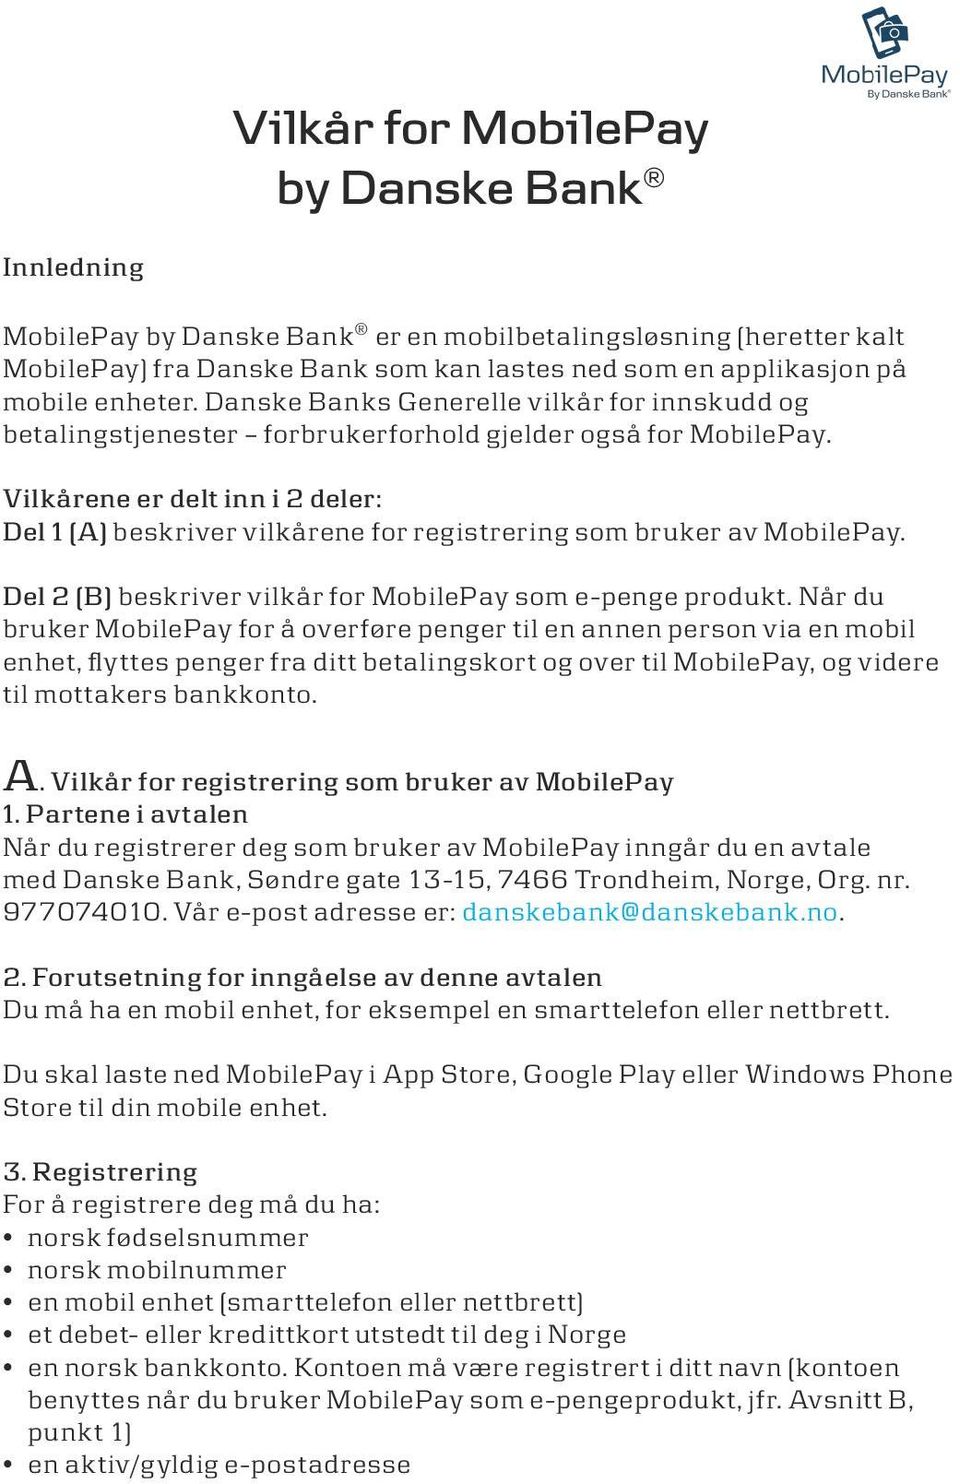 Vilkårene er delt inn i 2 deler: Del 1 (A) beskriver vilkårene for registrering som bruker av MobilePay. Del 2 (B) beskriver vilkår for MobilePay som e-penge produkt.